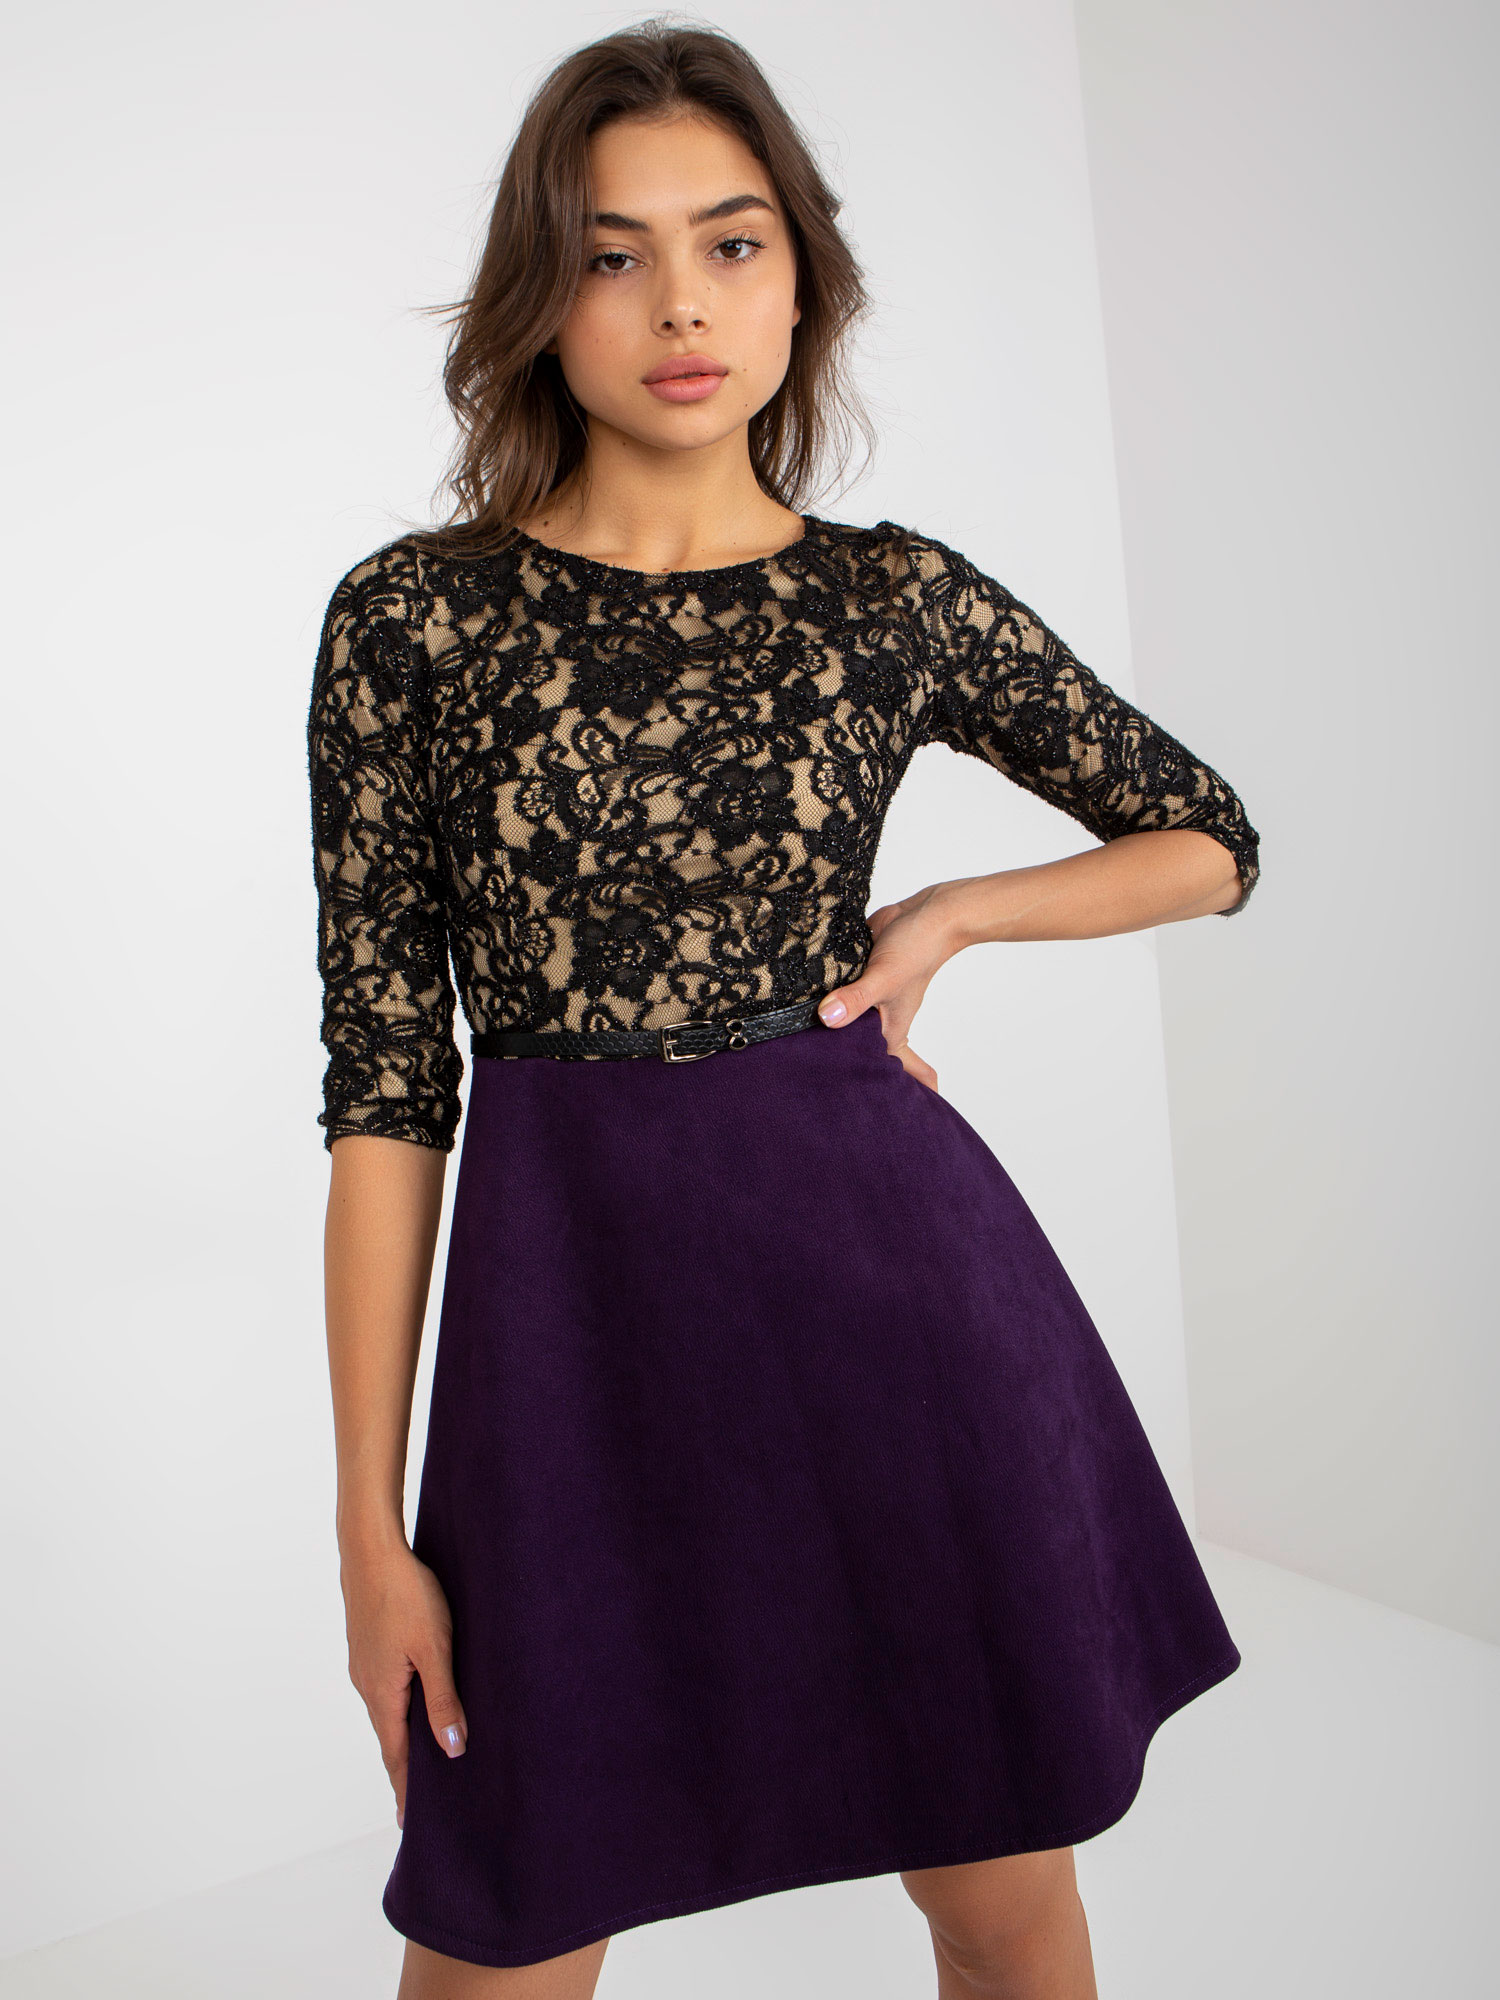 Tmavě fialové šaty s krajkovým topem -LK-SK-506582.04P-dark purple Velikost: 38